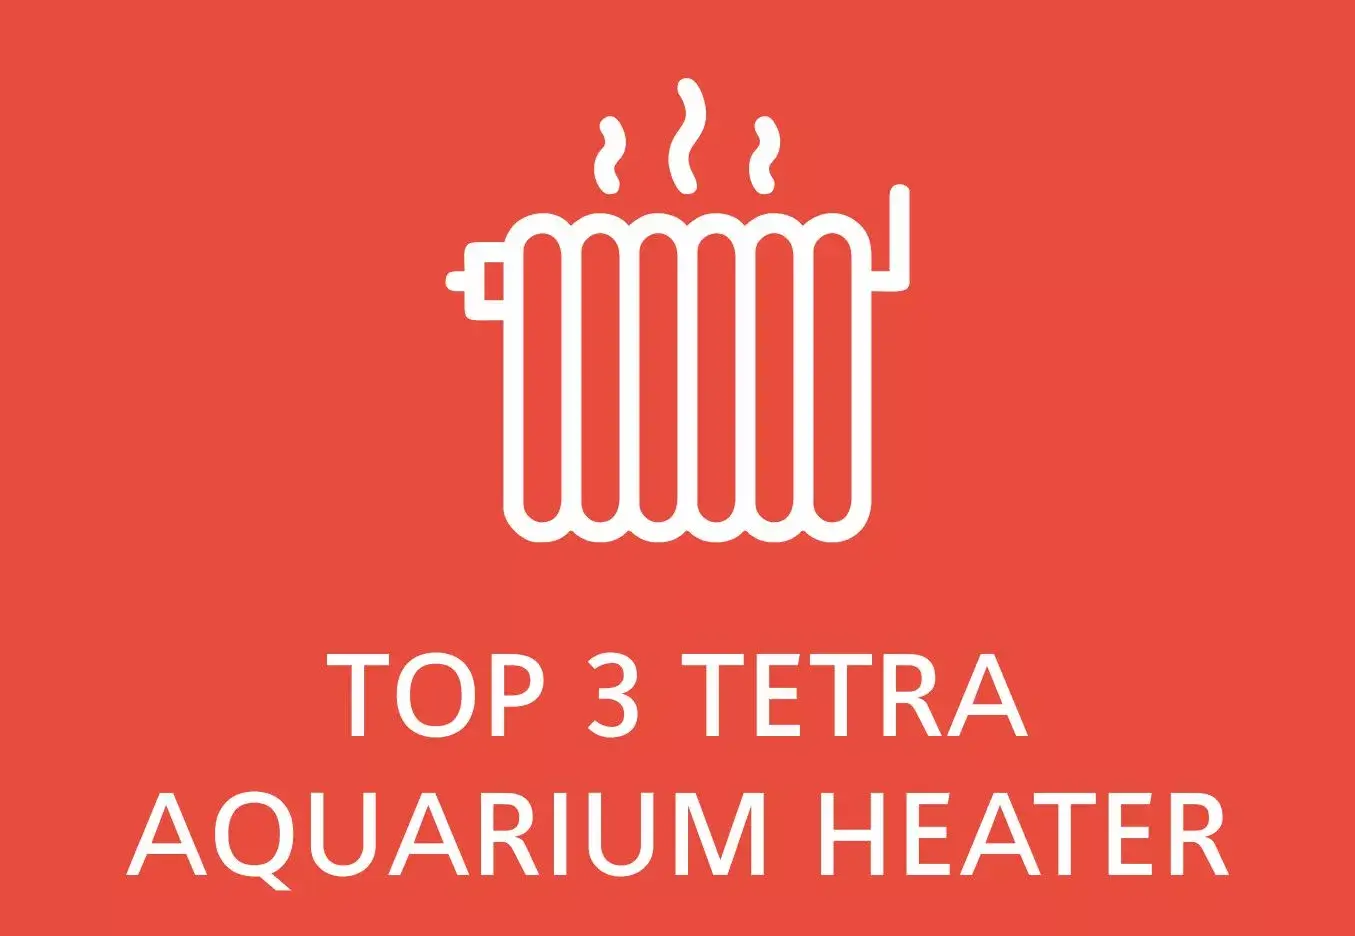 tetra aquarium heaters